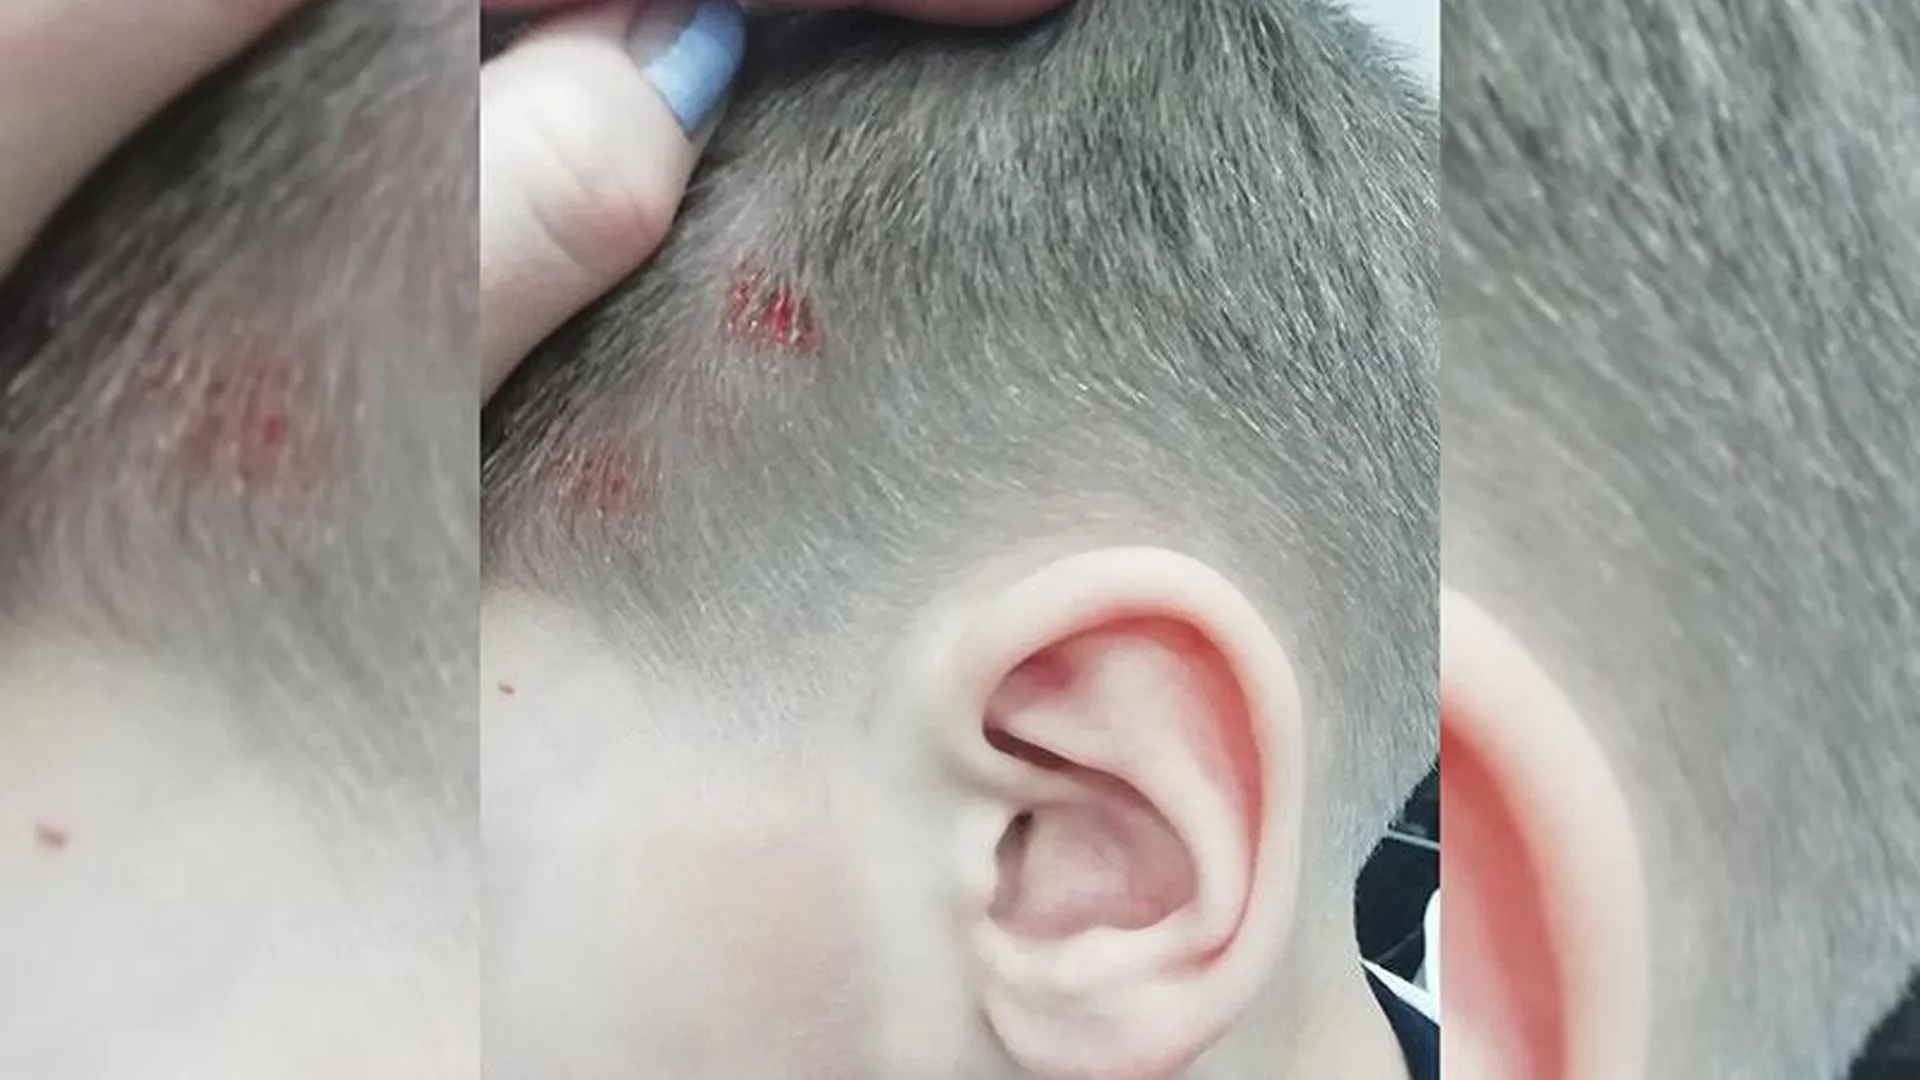 УК из Подольска узнала о разбившем голову мальчике из соцсетей